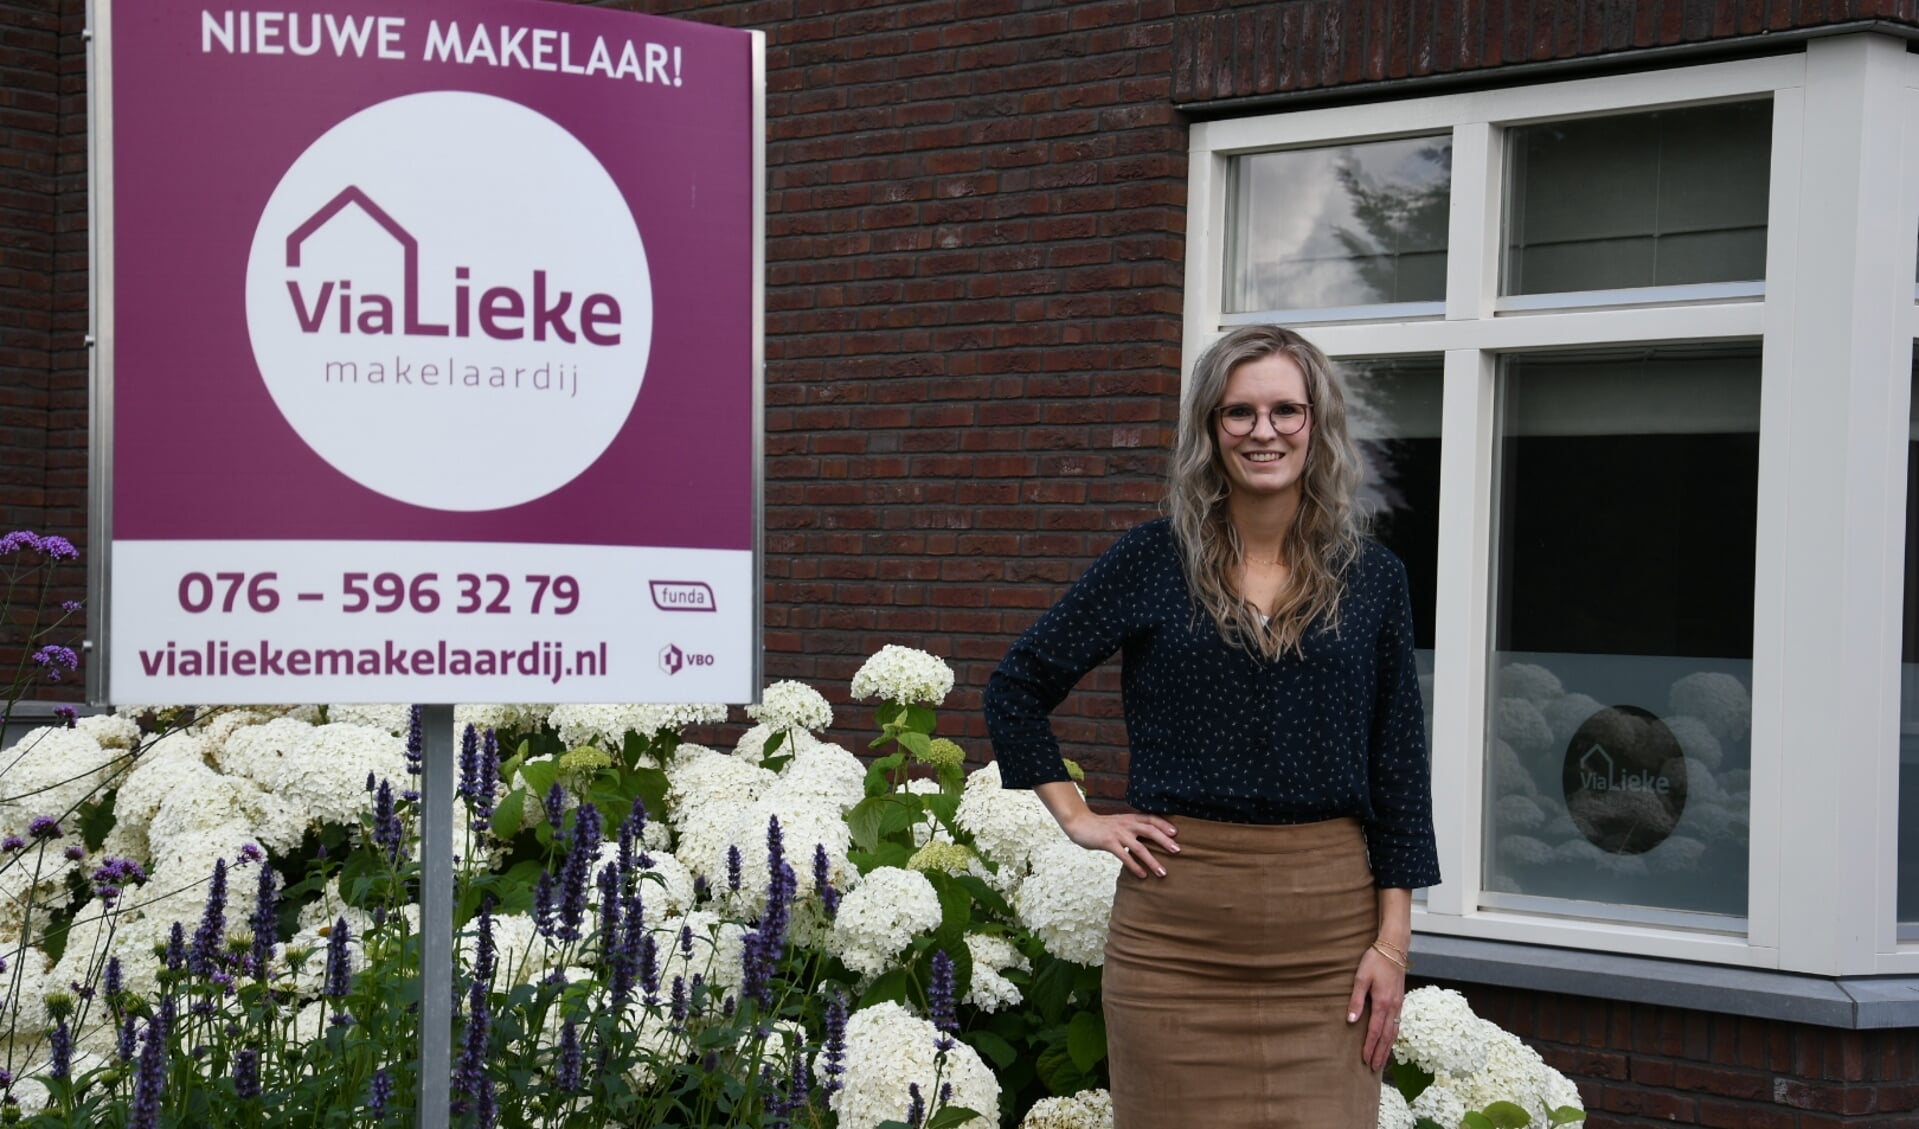 ViaLieke is een nieuwe makelaar in de gemeente Zundert. 